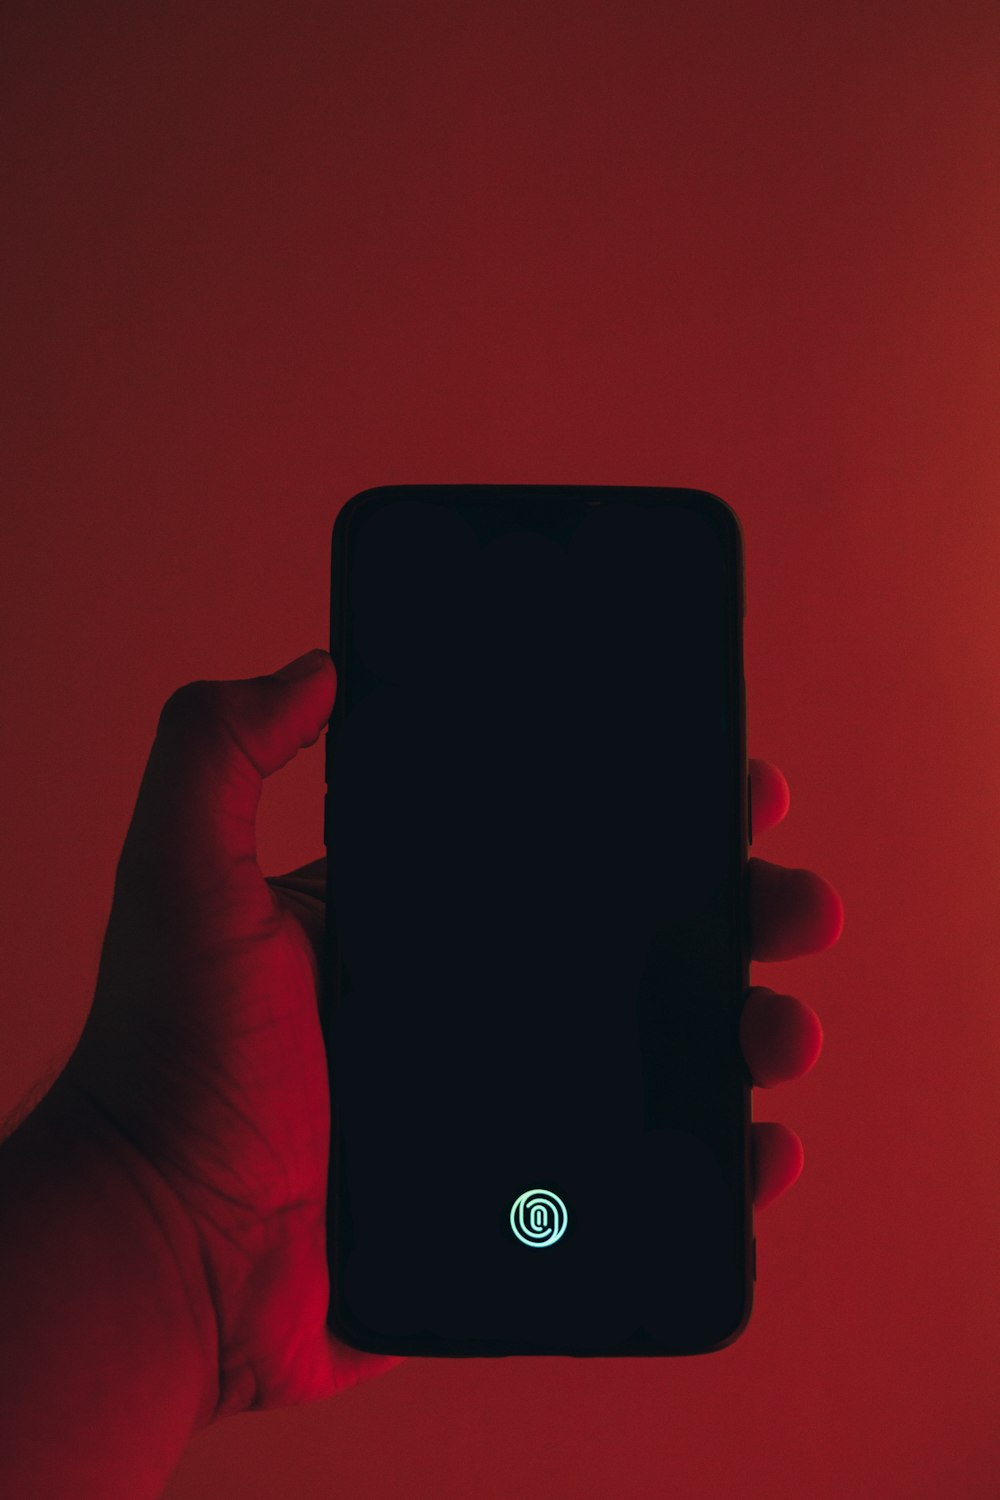 Persona sosteniendo un teléfono inteligente Android LG negro